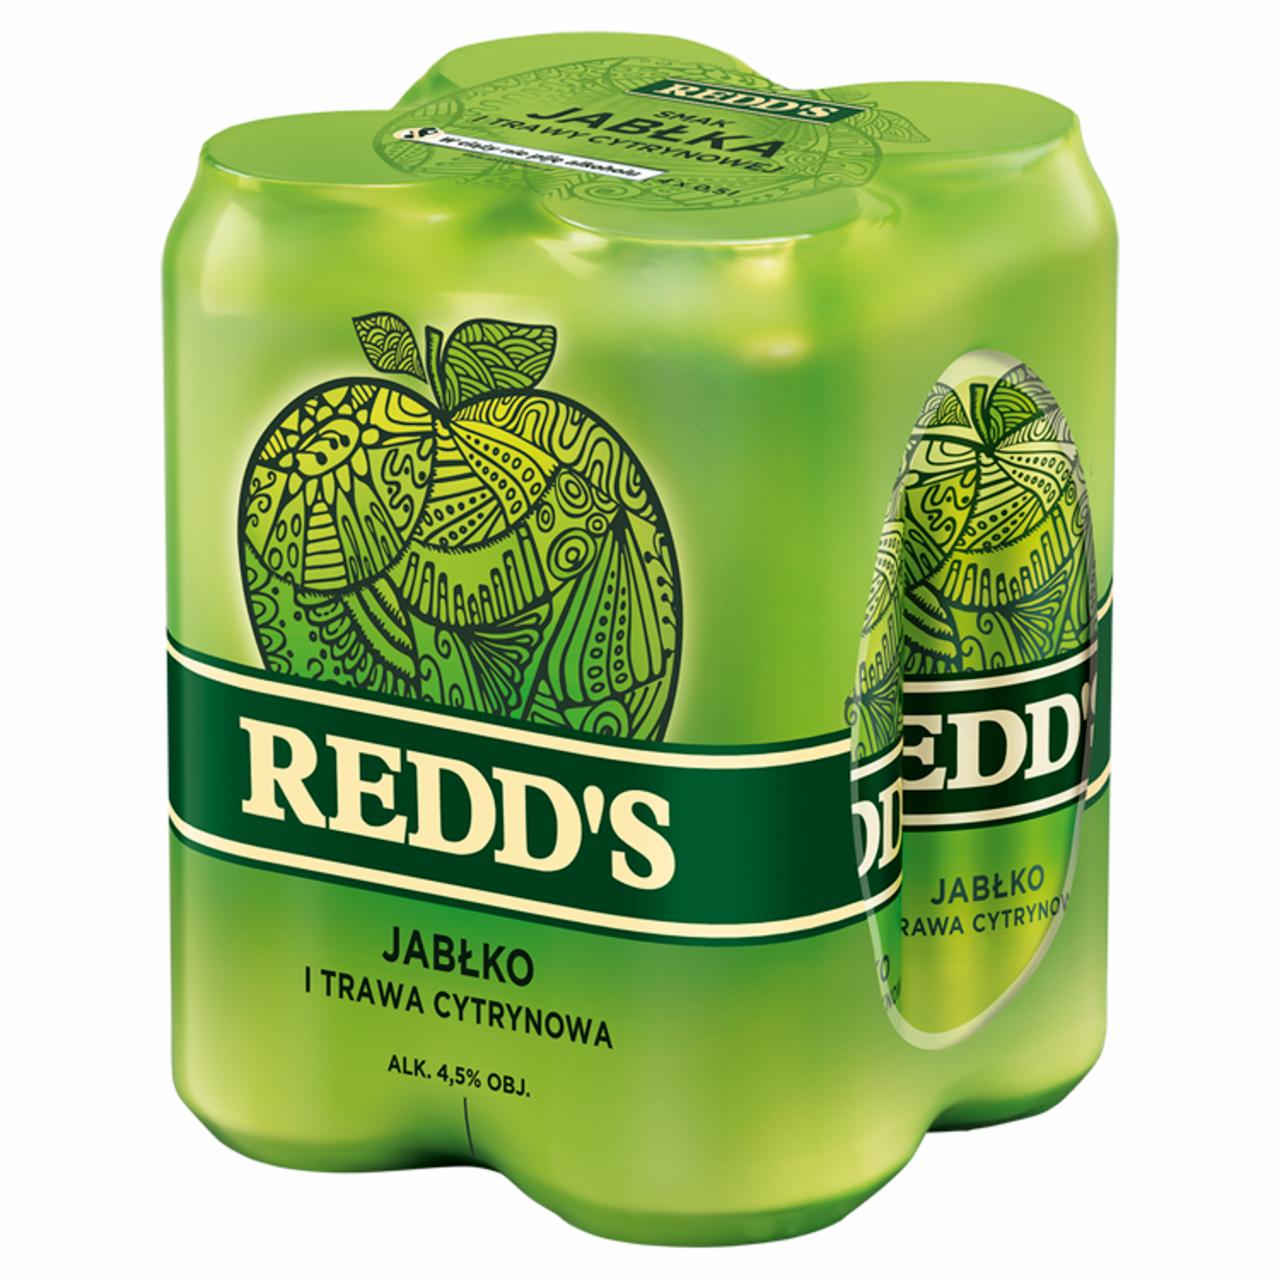 Zdjęcia - Redd's Piwo smak jabłka i trawy cytrynowej 4 x 0,5 l